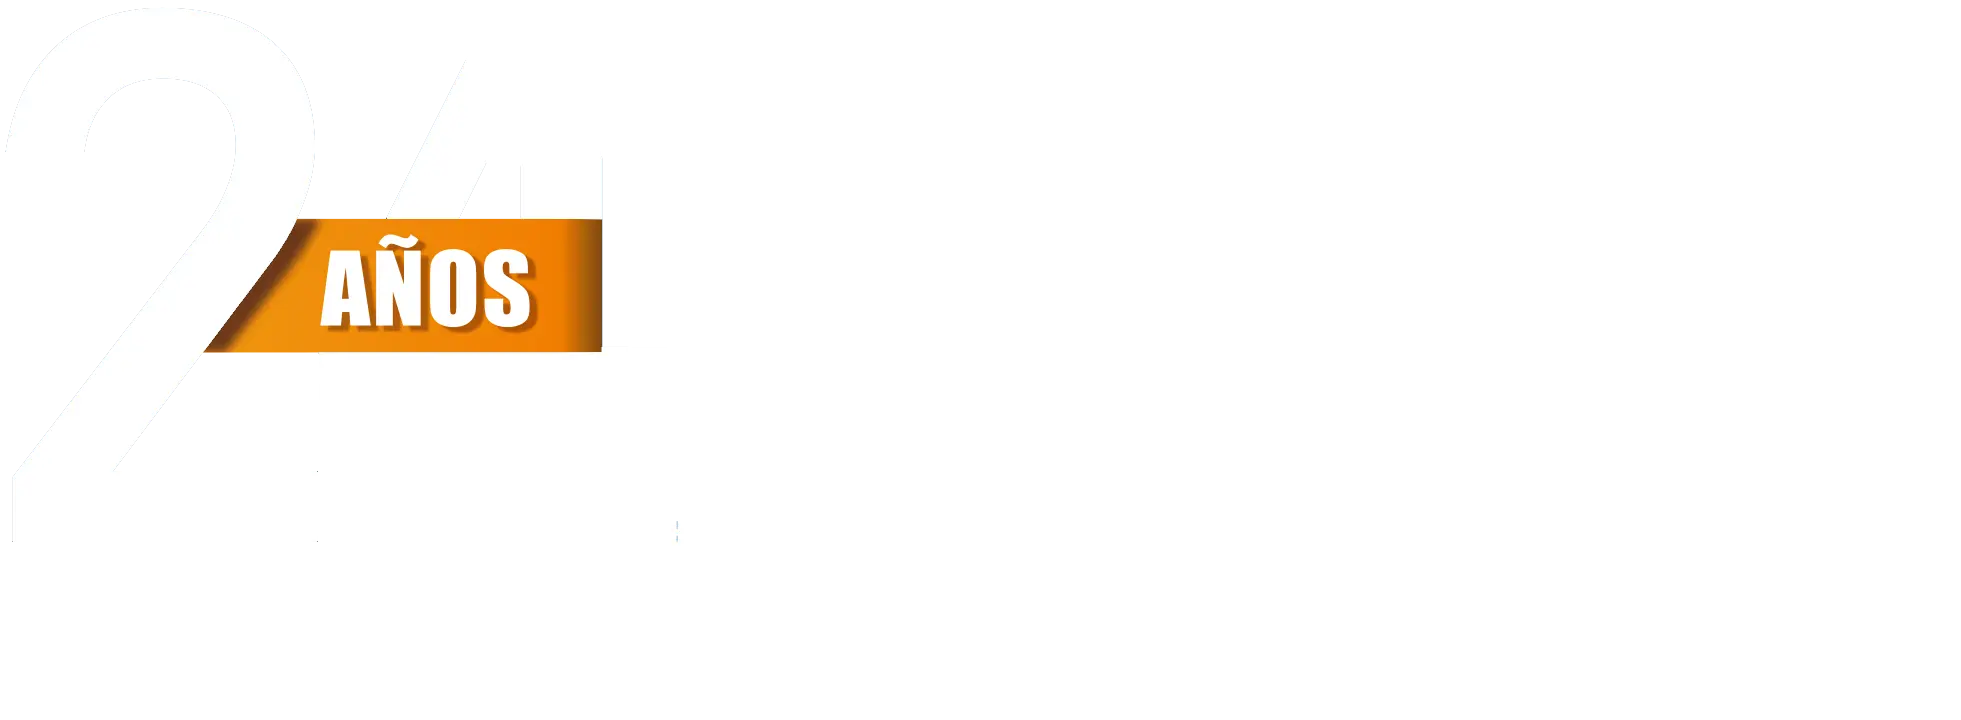 logo Gica Ingenieros